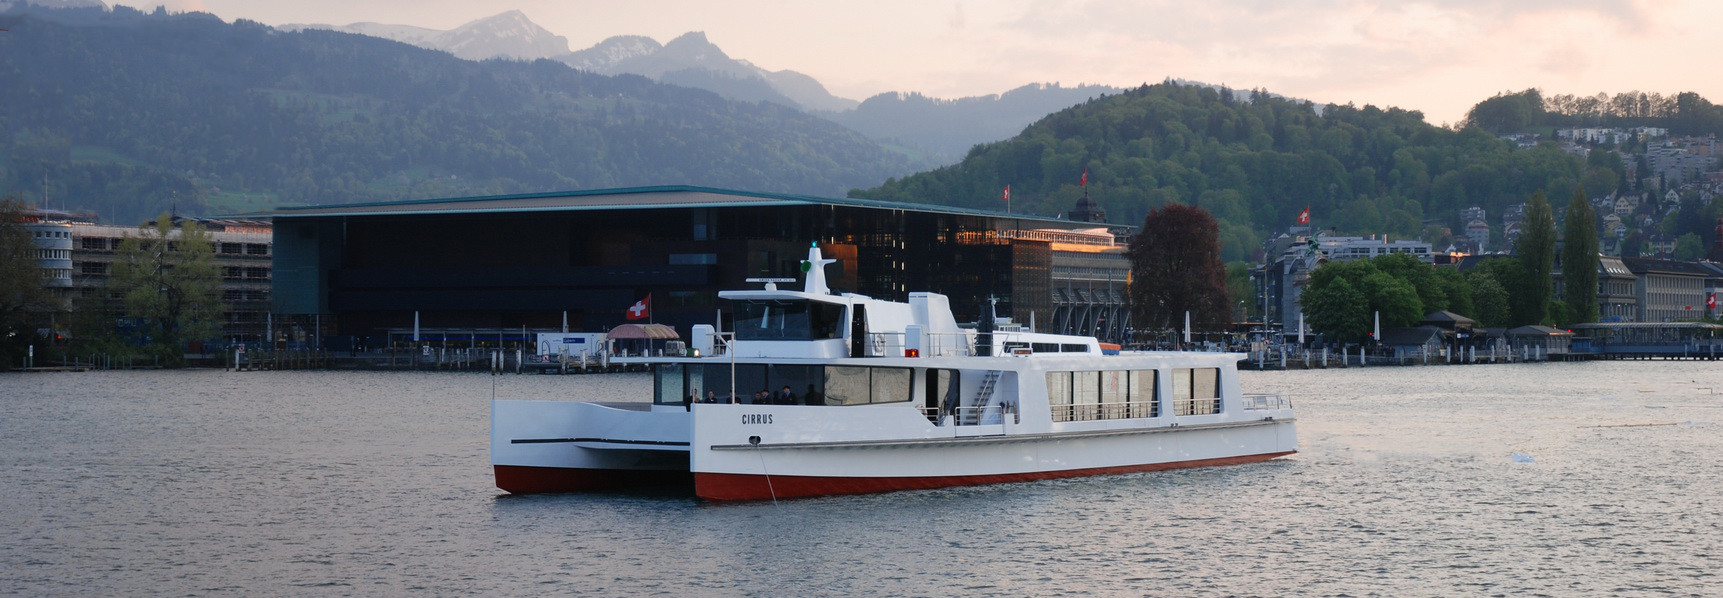 Par temps nuageux, le bateau à moteur Cirrus navigue dans le bassin du lac de Lucerne, à l'arrière-plan on aperçoit le KKL. 